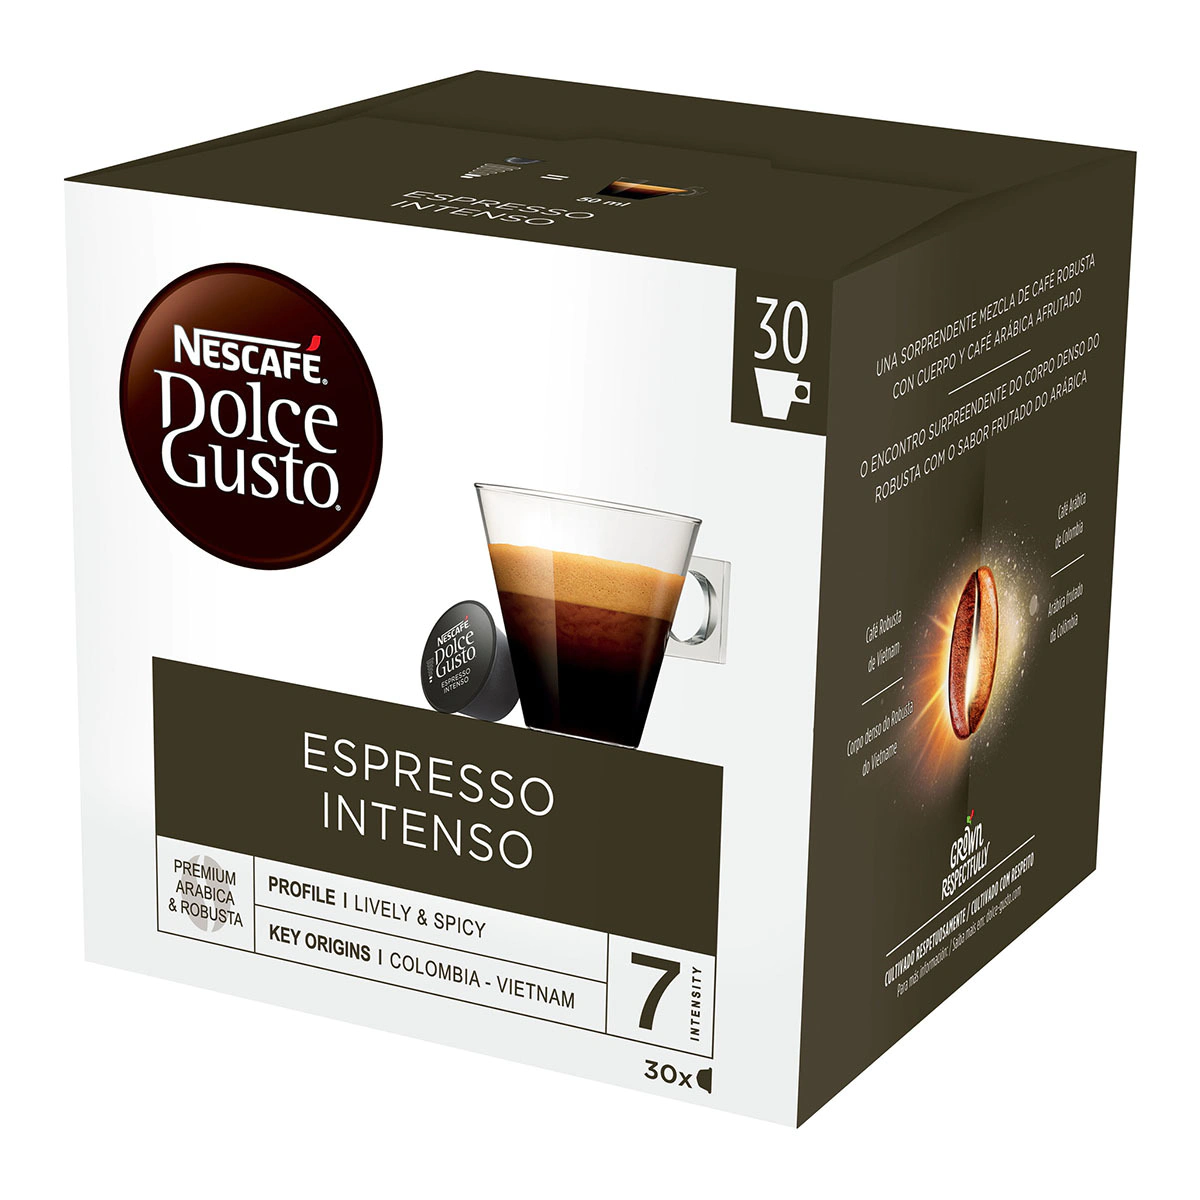 Estuche 30 + 4 cápsulas NESCAFE DOLCE GUSTO café Espresso Intenso Premium arábica y robusta de Colombia y Vietnam intensidad 7